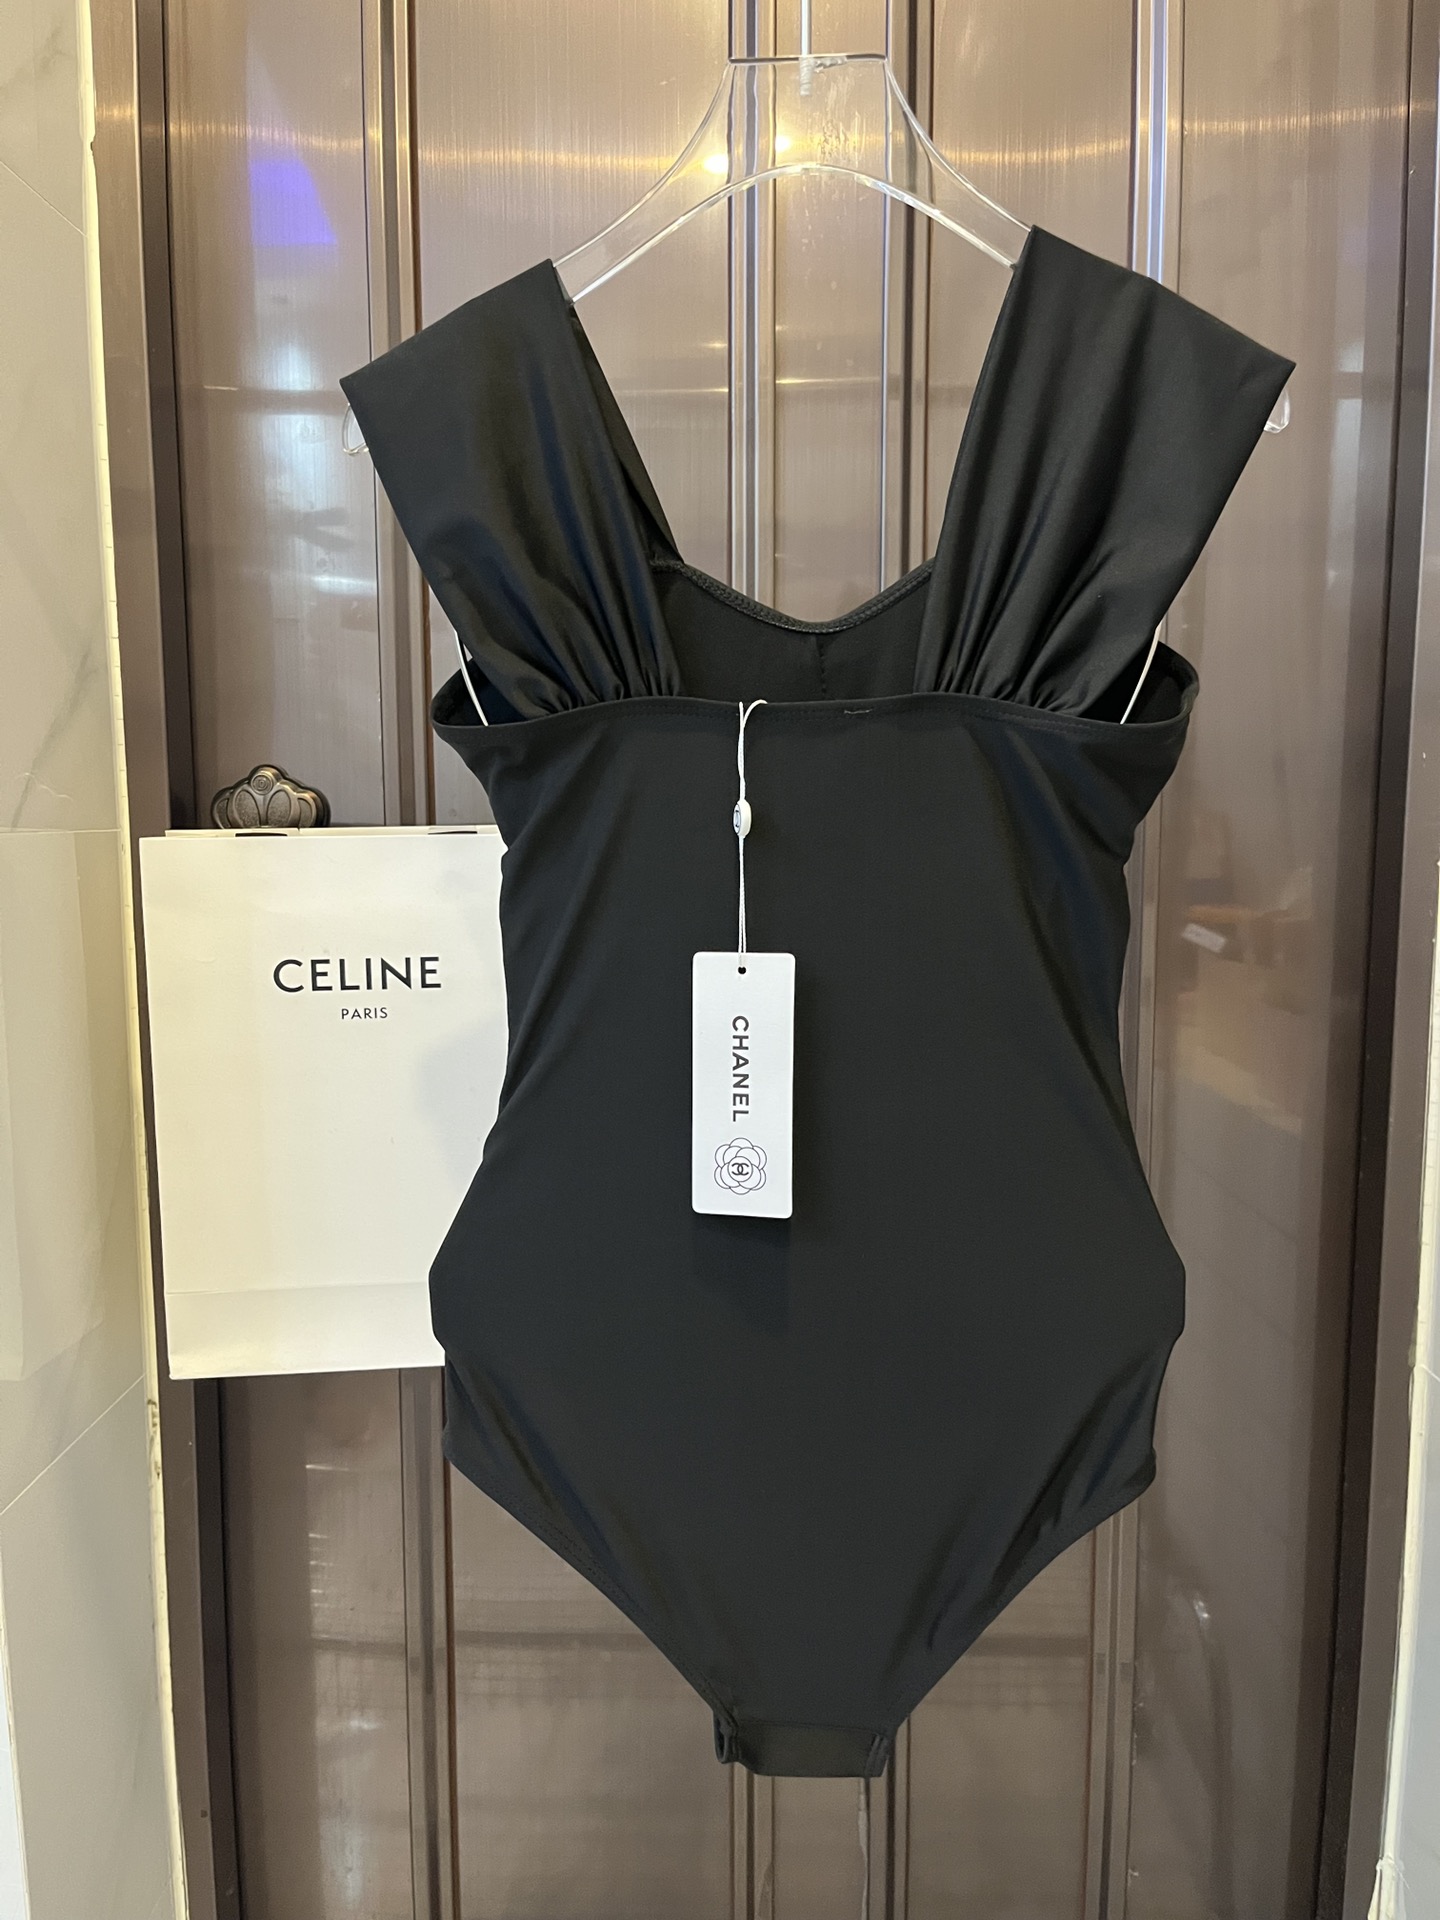 Chanel香奈儿新款连体泳衣比基尼官方款SMLXL